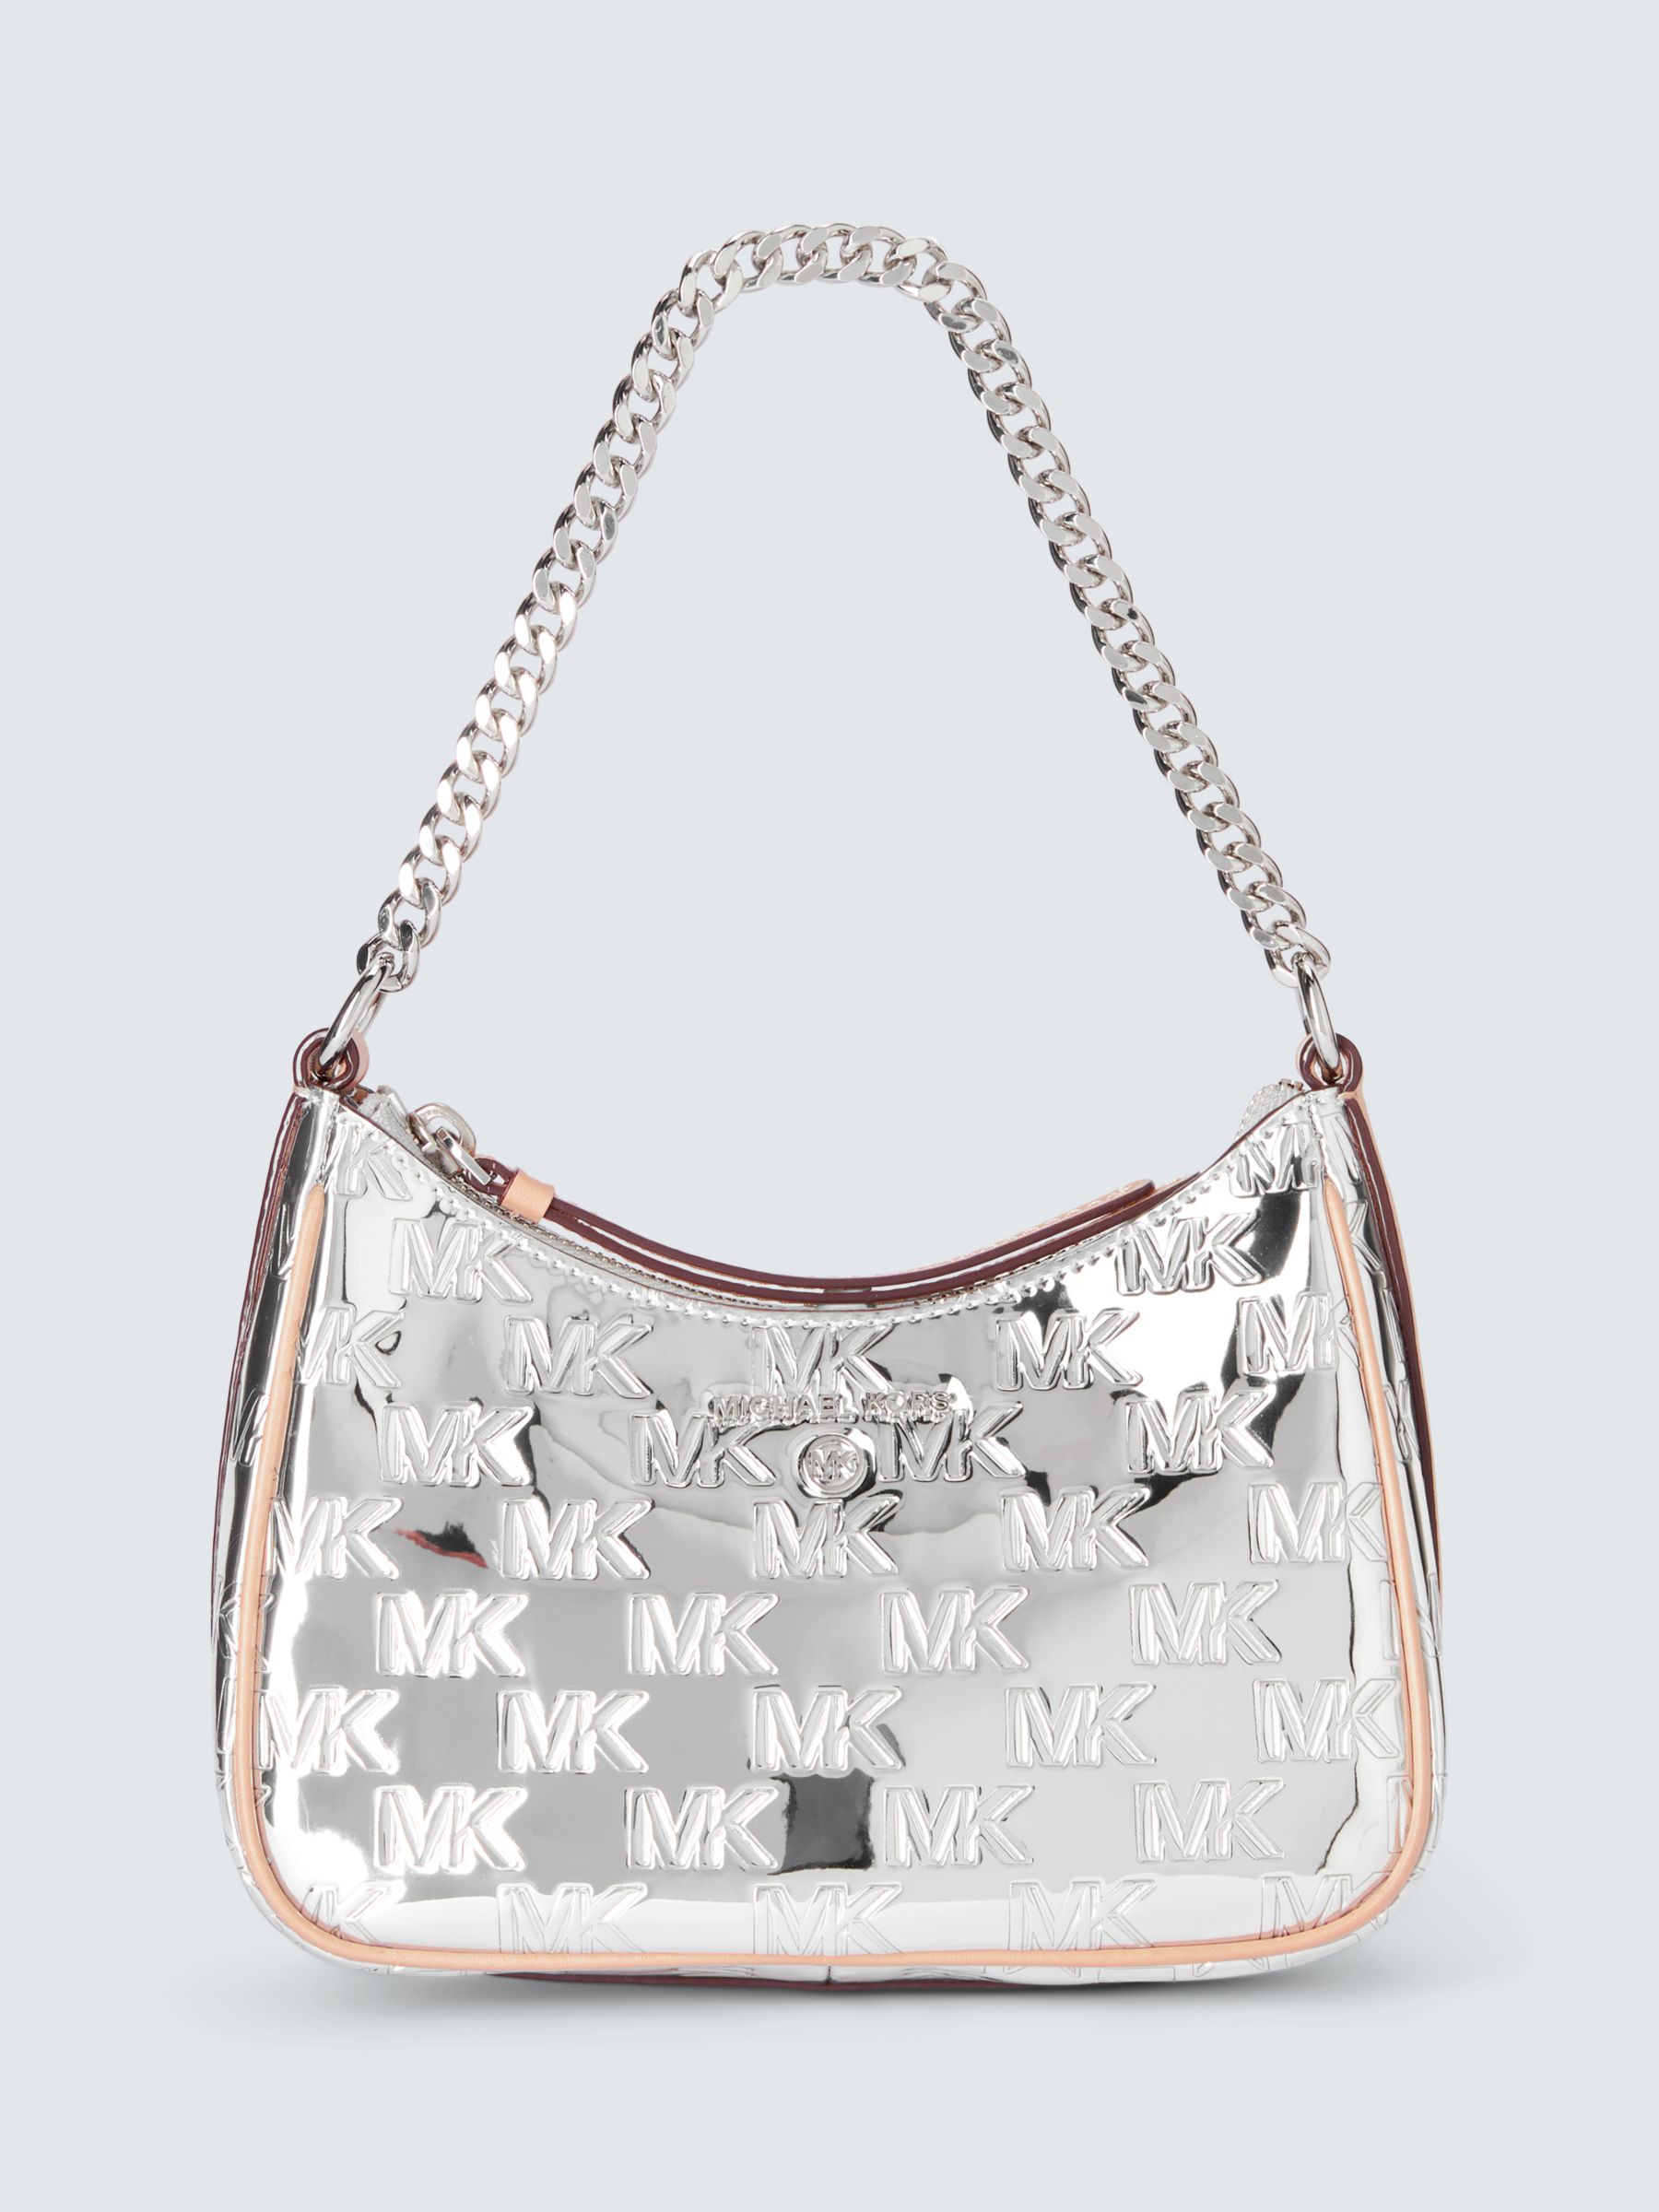 Michael Kors Designer Bags in Handbags